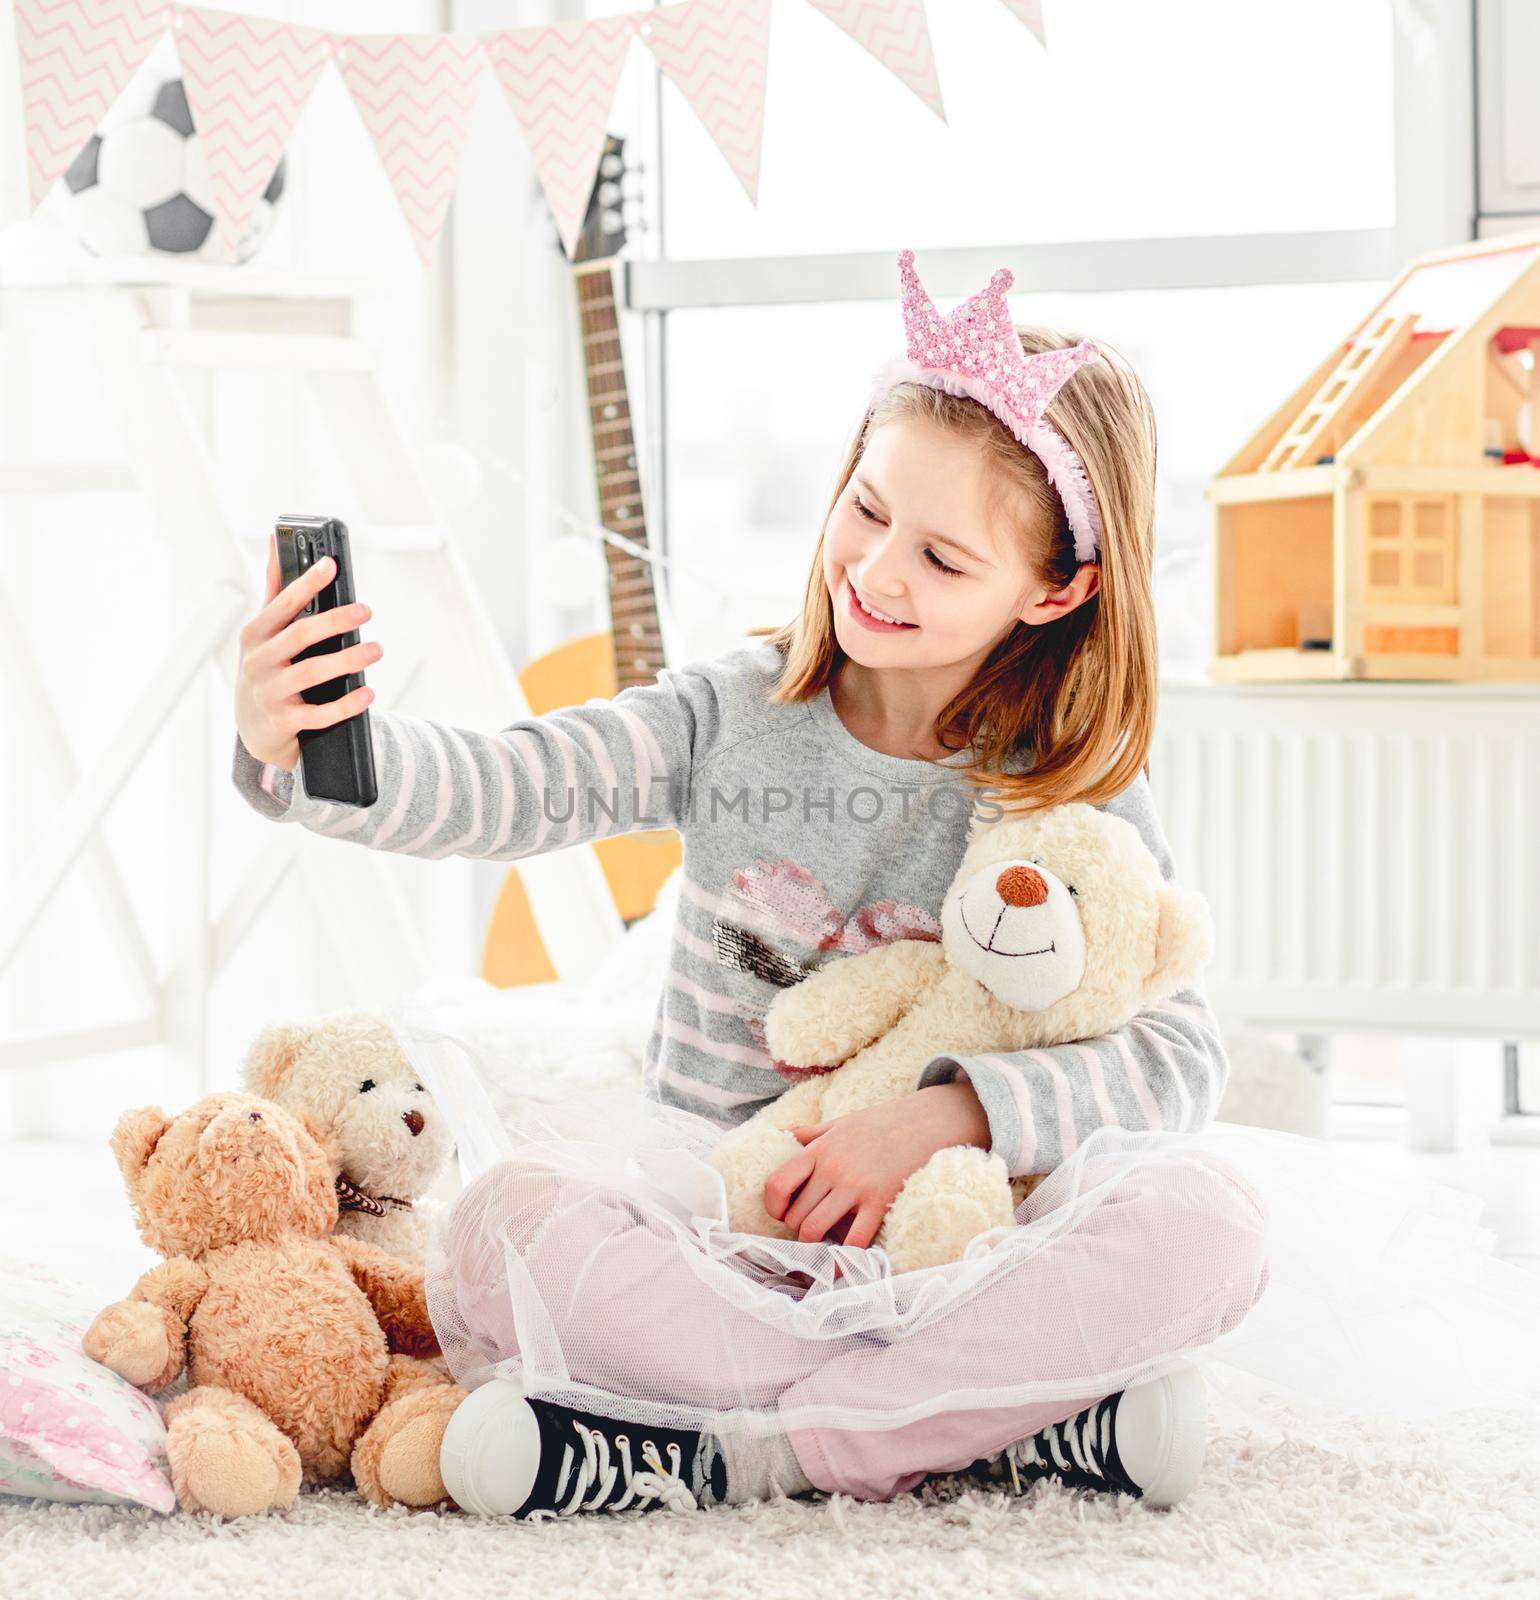 Cute little girl taking selfie with teddy bear in light room